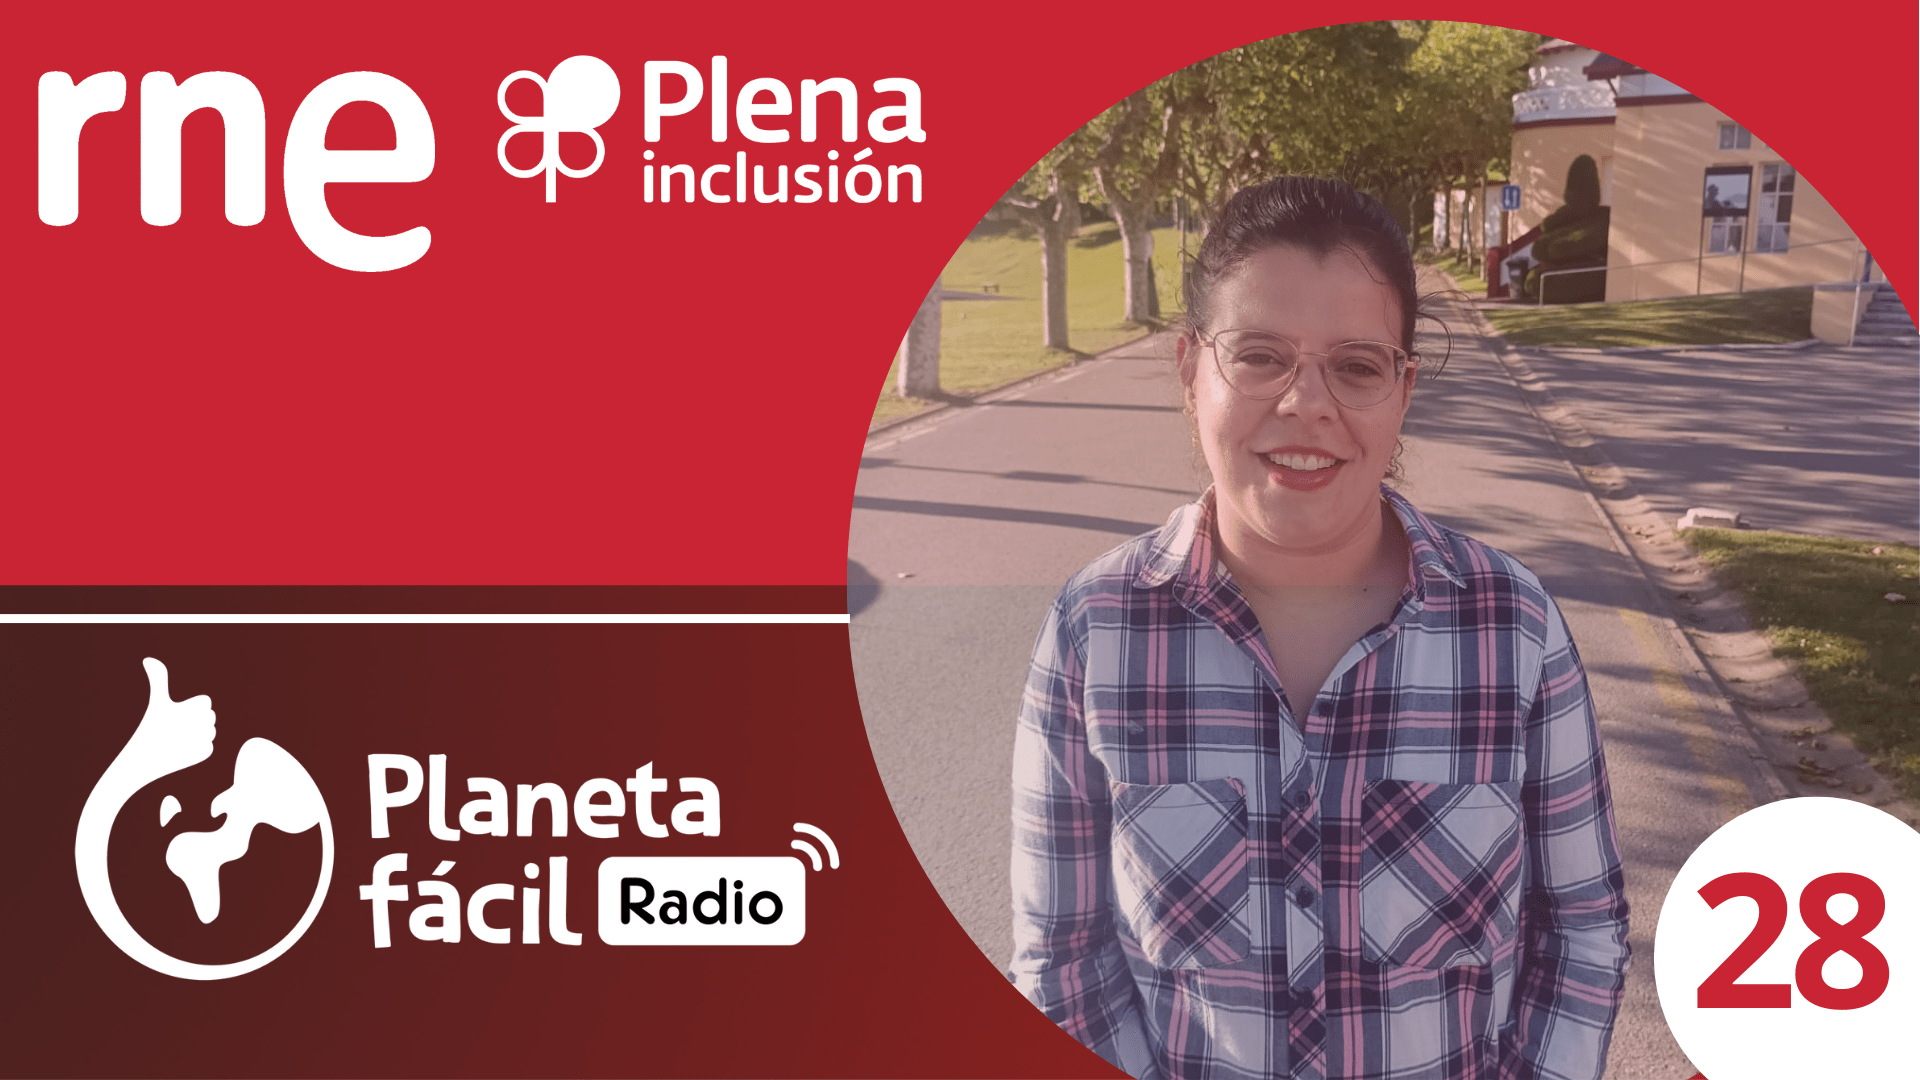 Ir a Planeta fácil Radio estrena nuevo episodio dedicado al empleo de las personas con discapacidad intelectual